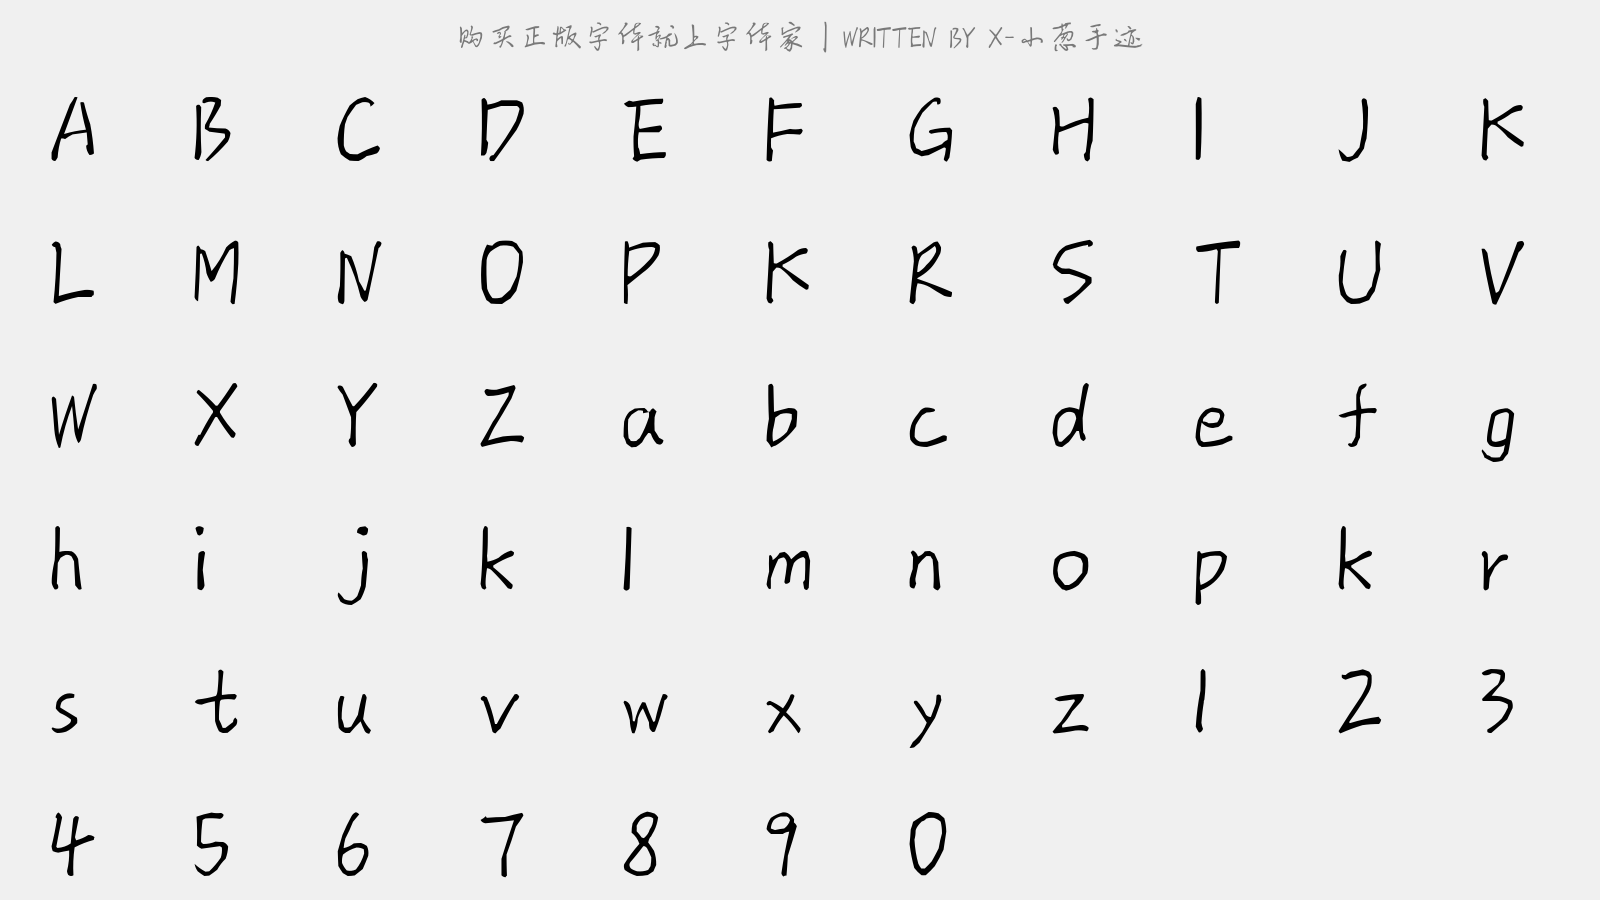 X-小葱手迹 - 大写字母/小写字母/数字